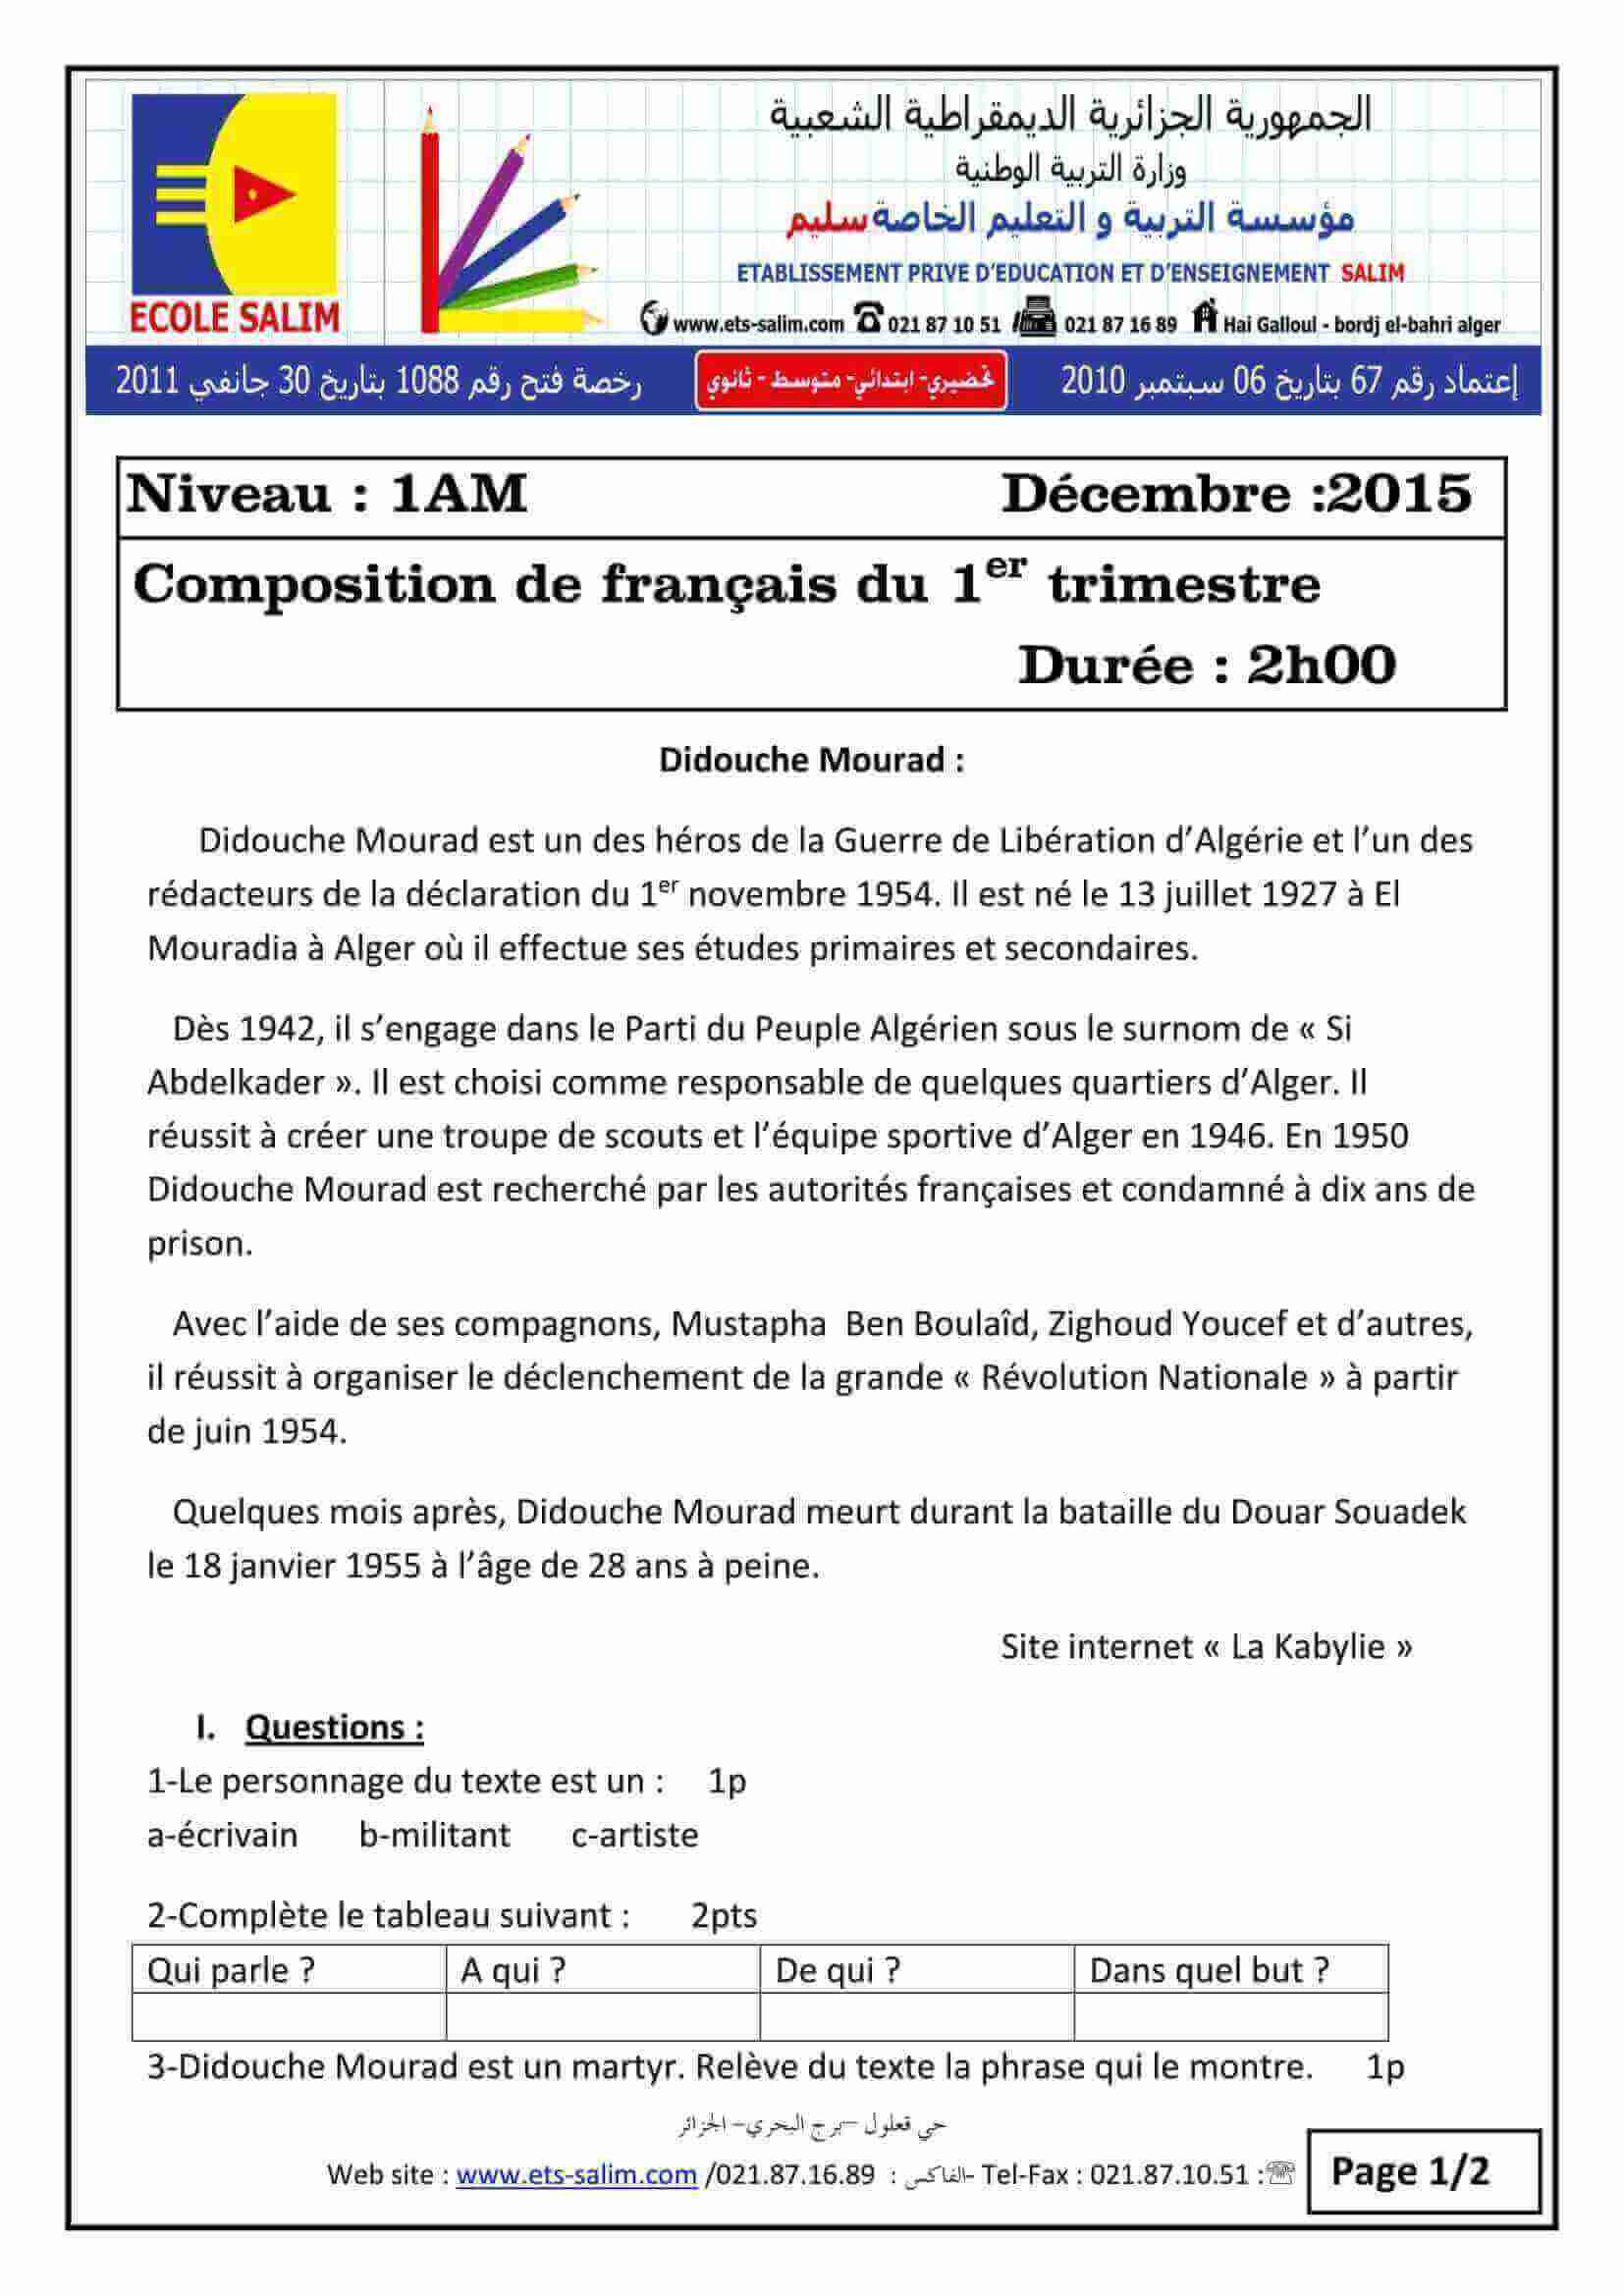  اختبار الفصل الأول في اللغة الفرنسية للسنة الاولى متوسط النموذج 8